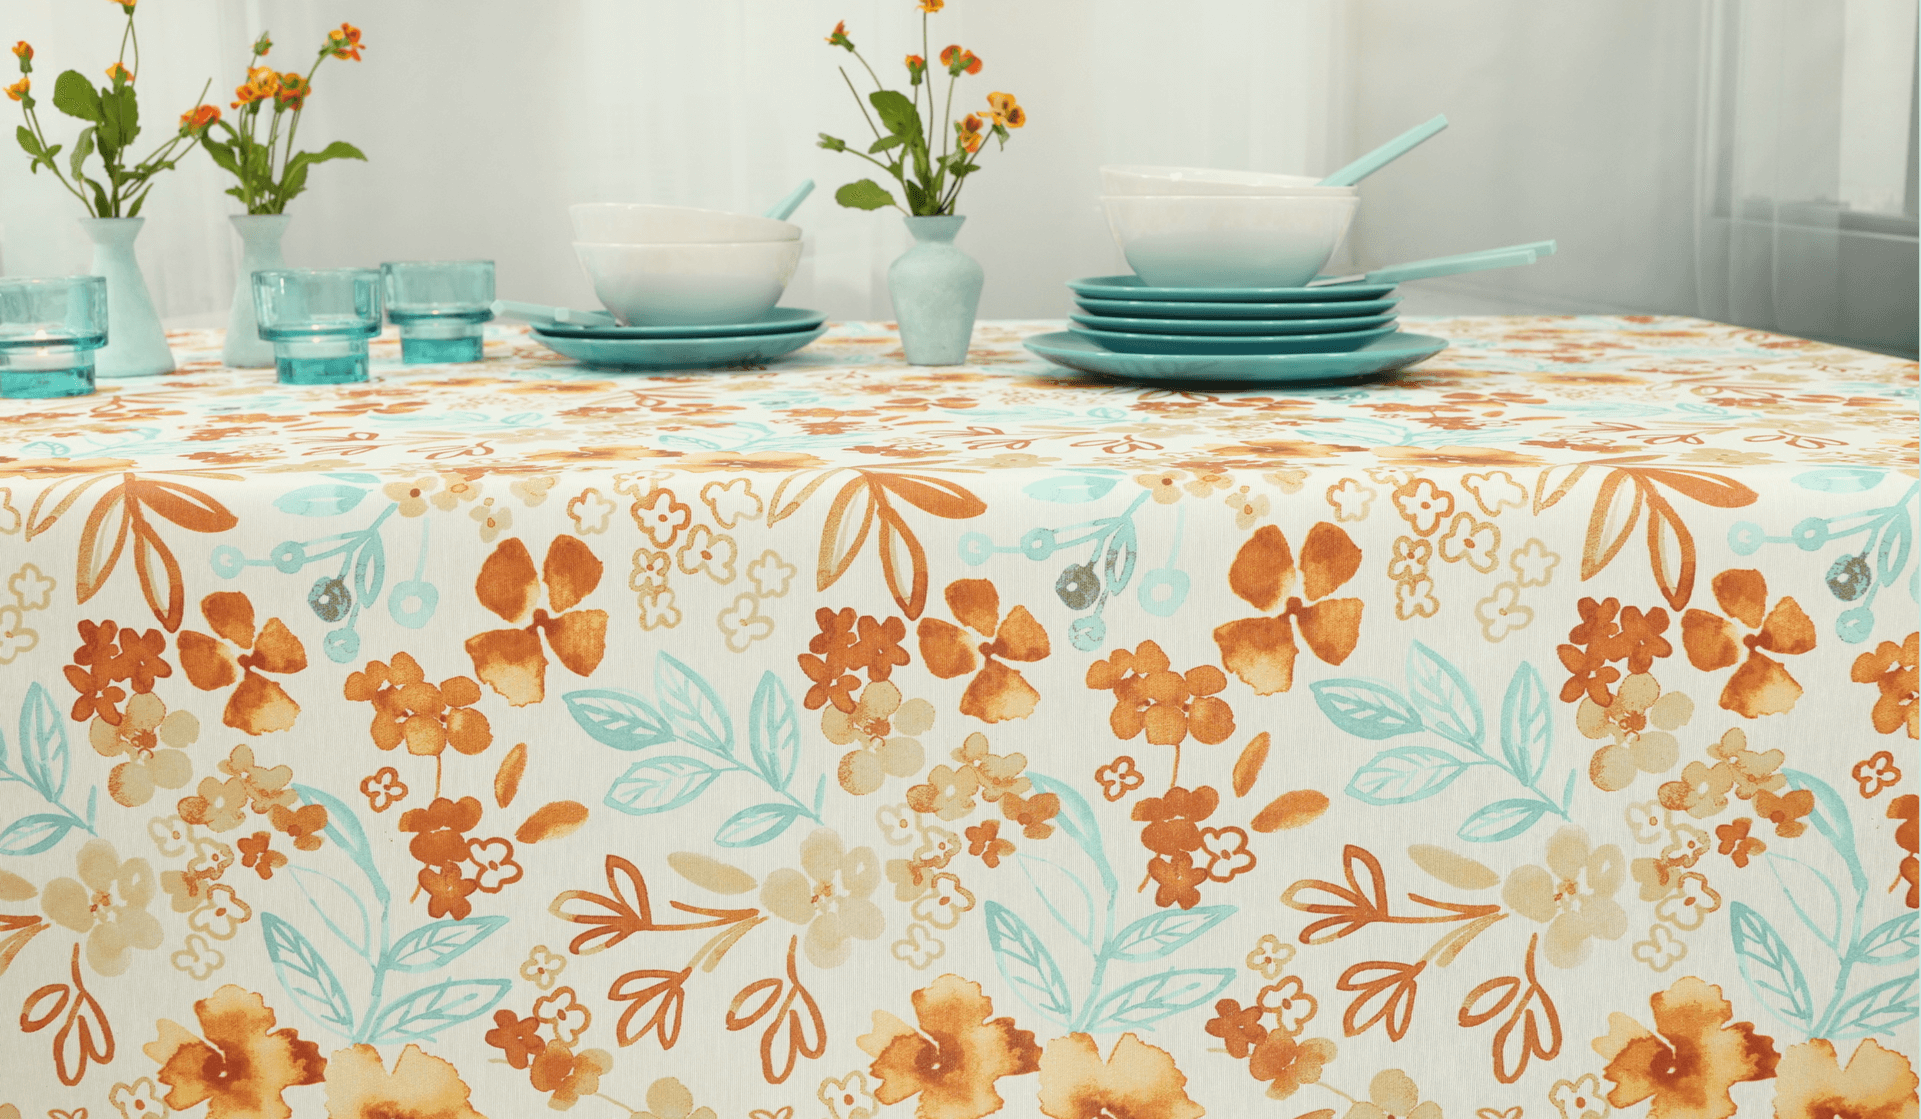 Moderne abwaschbare Tischdecke. Wunderschönes Muster mit Blumen und Blüten